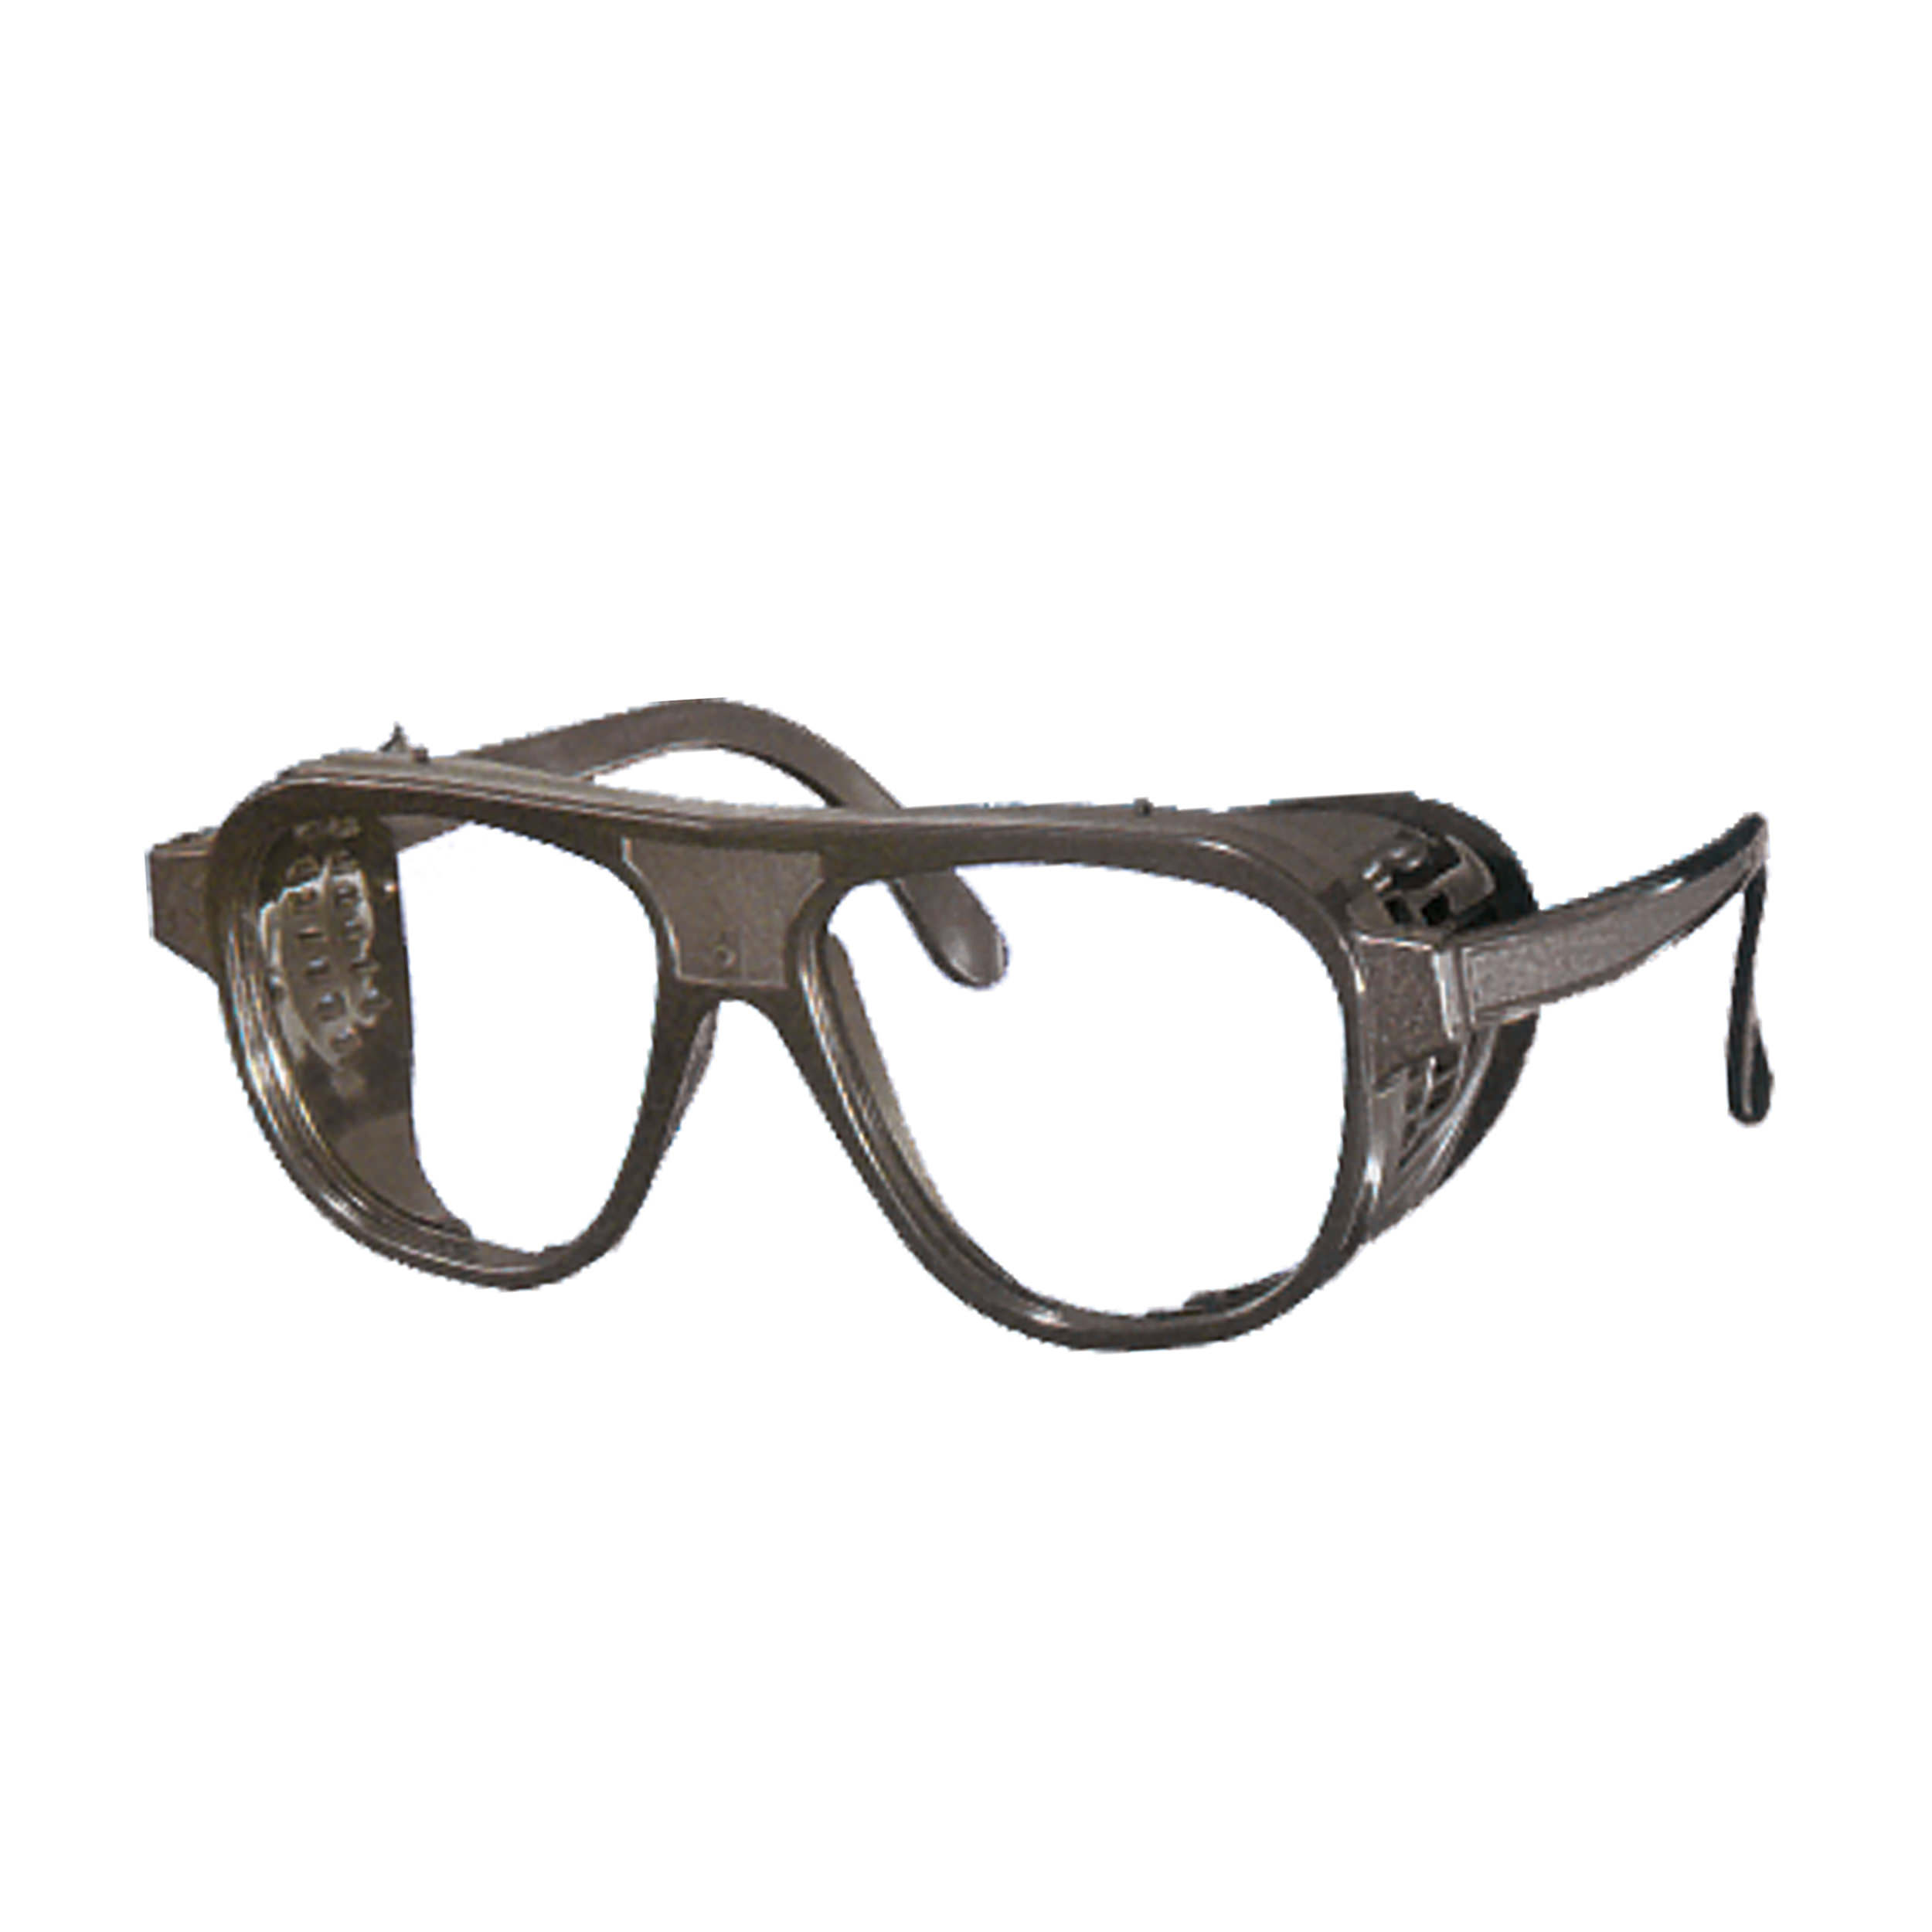 Nylonbrille, schwarz, ohne Bügelverstellung, mit Mittelschraube, Gläser oval 52x62mm, farblos, splitterfrei